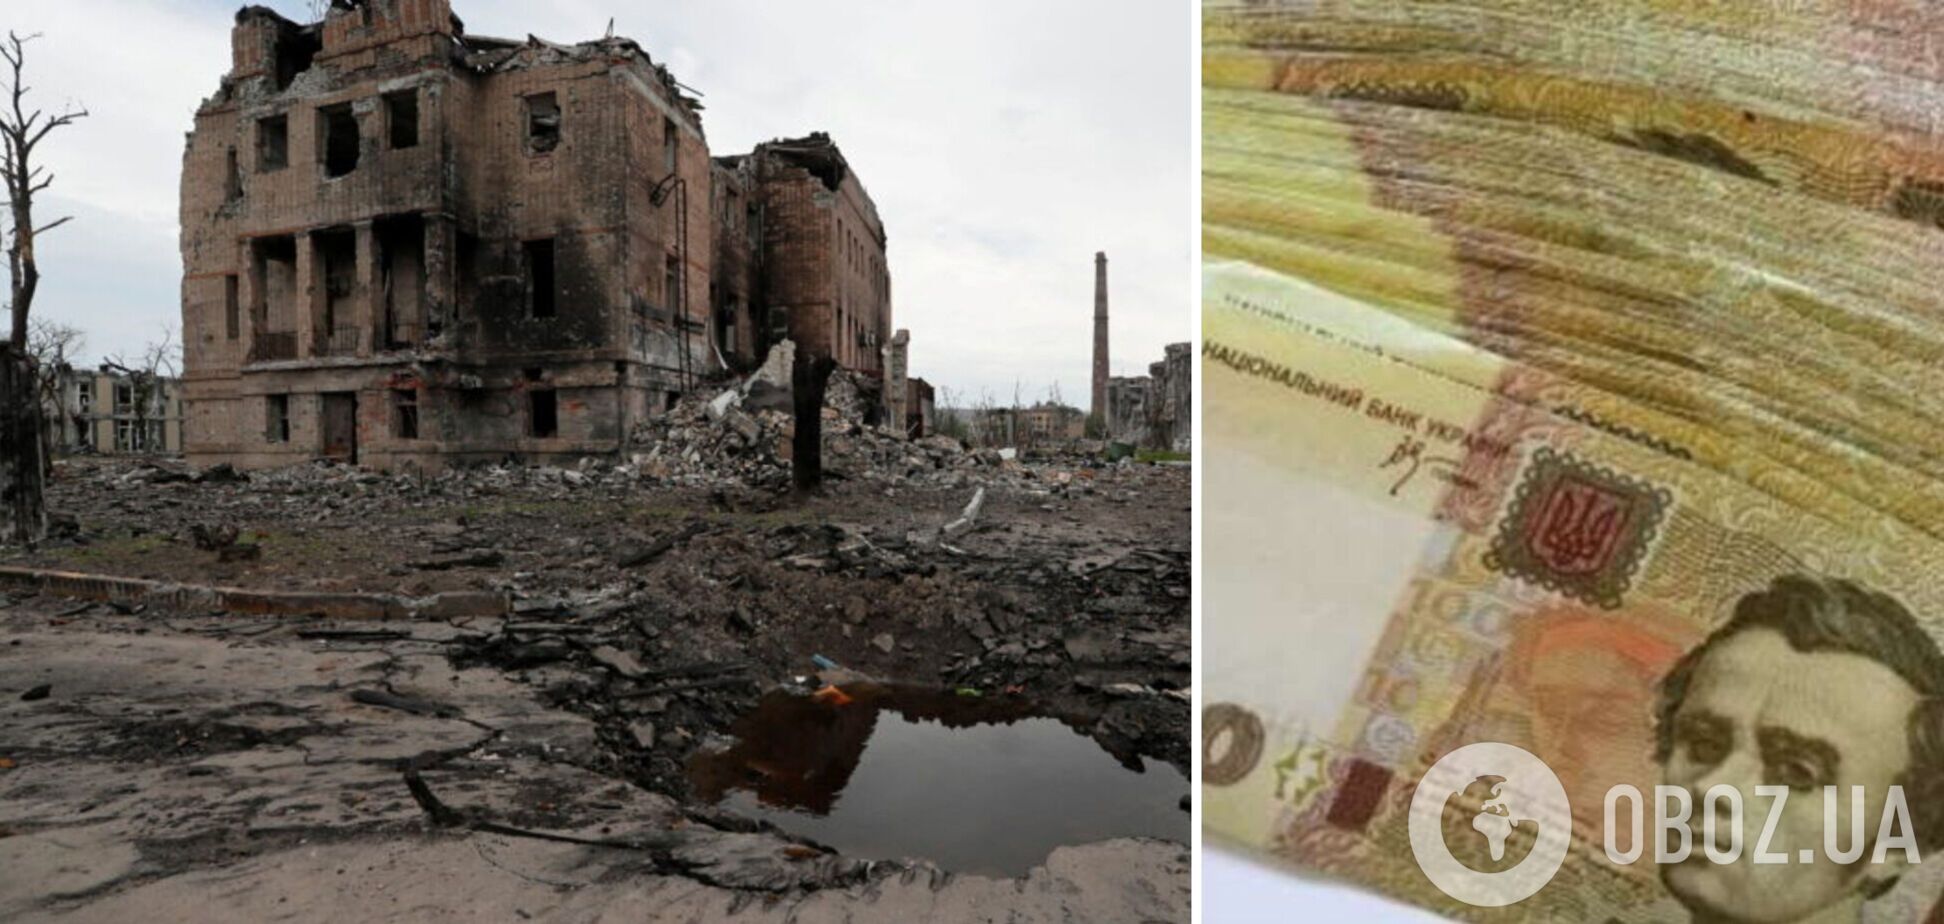 Постраждалим від війни українцям виплачуватимуть до 1 млн грн